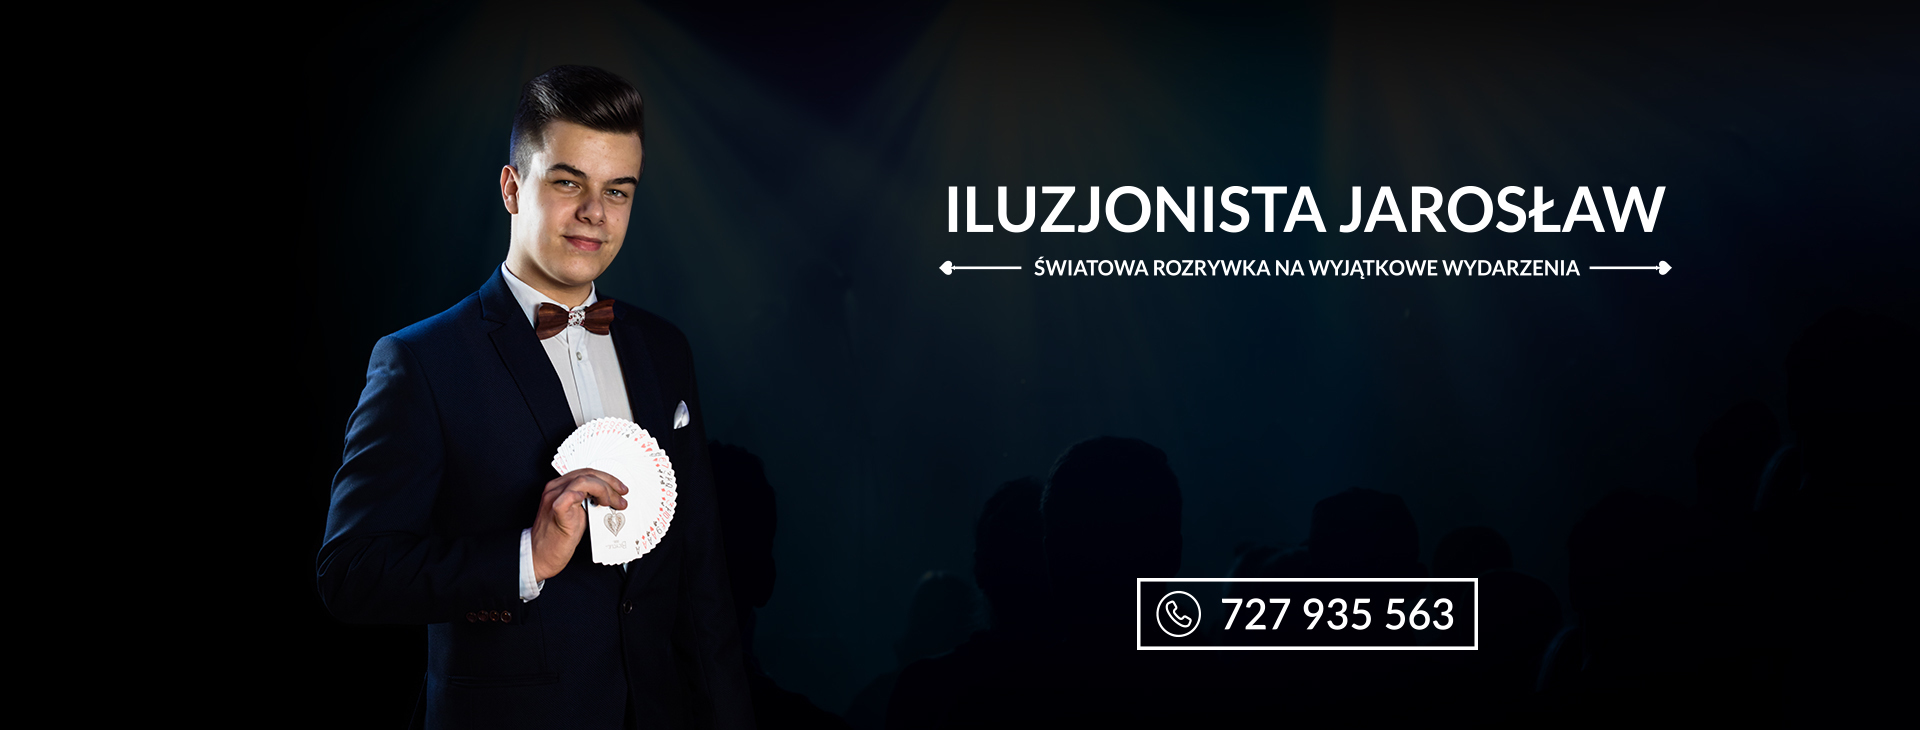 Iluzjonista Jarosław | Iluzjonista Warszawa, mazowieckie - cover